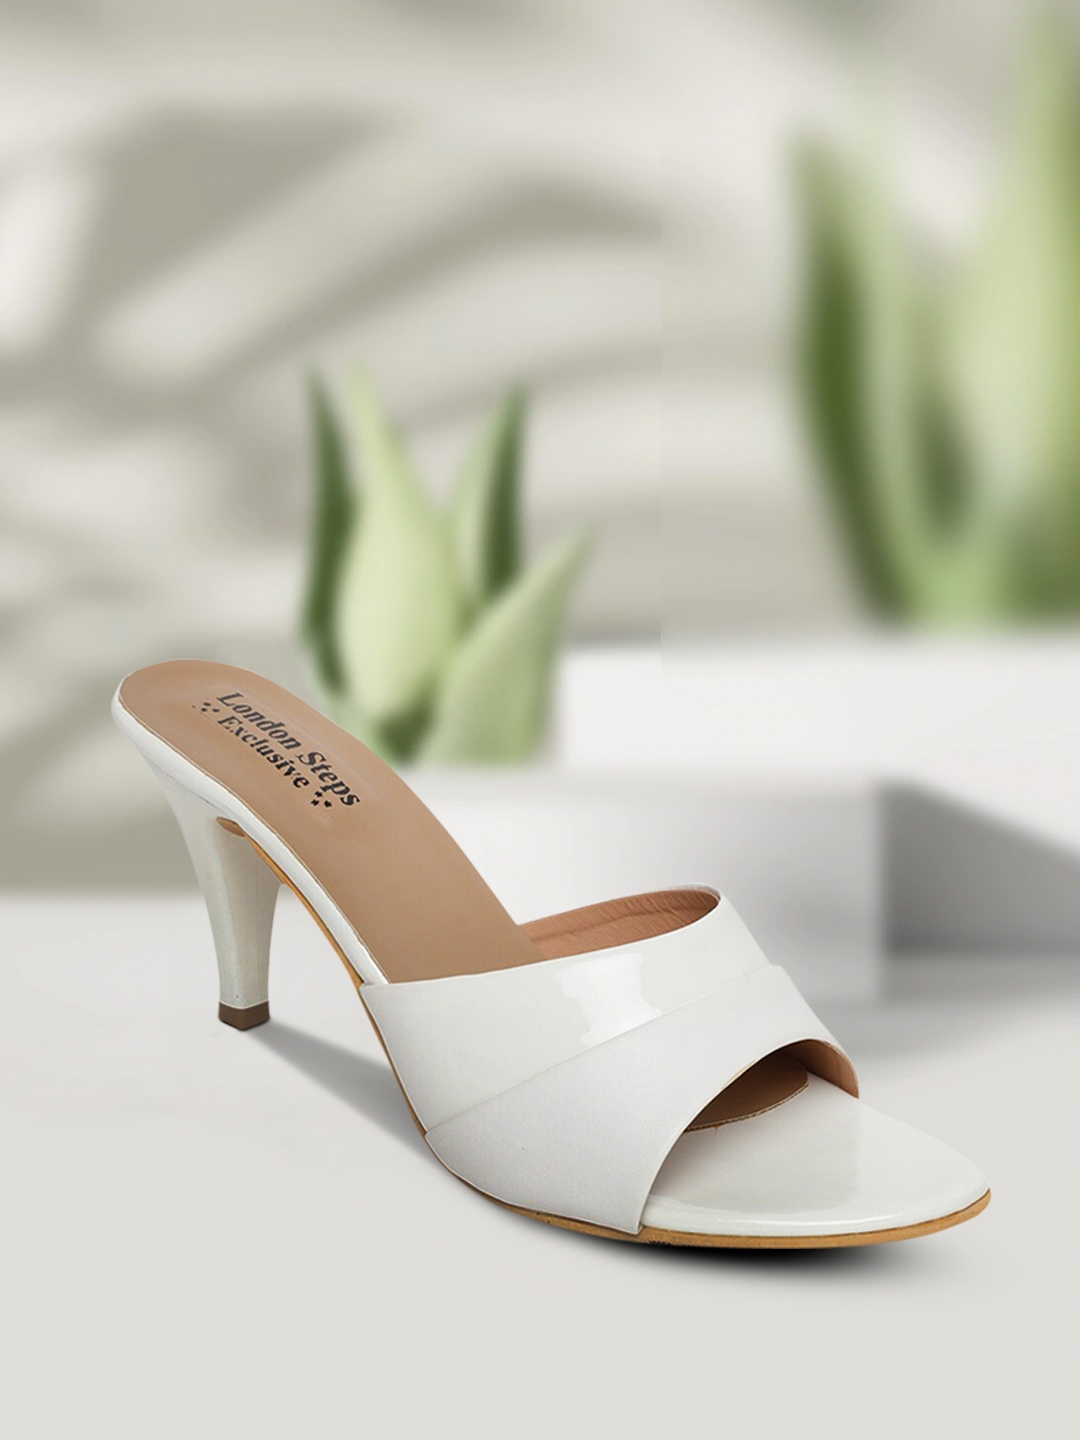 Transparent Heels Sandals  Buy Trendy Transparent Heels Sandals for Women  Online  Myntra